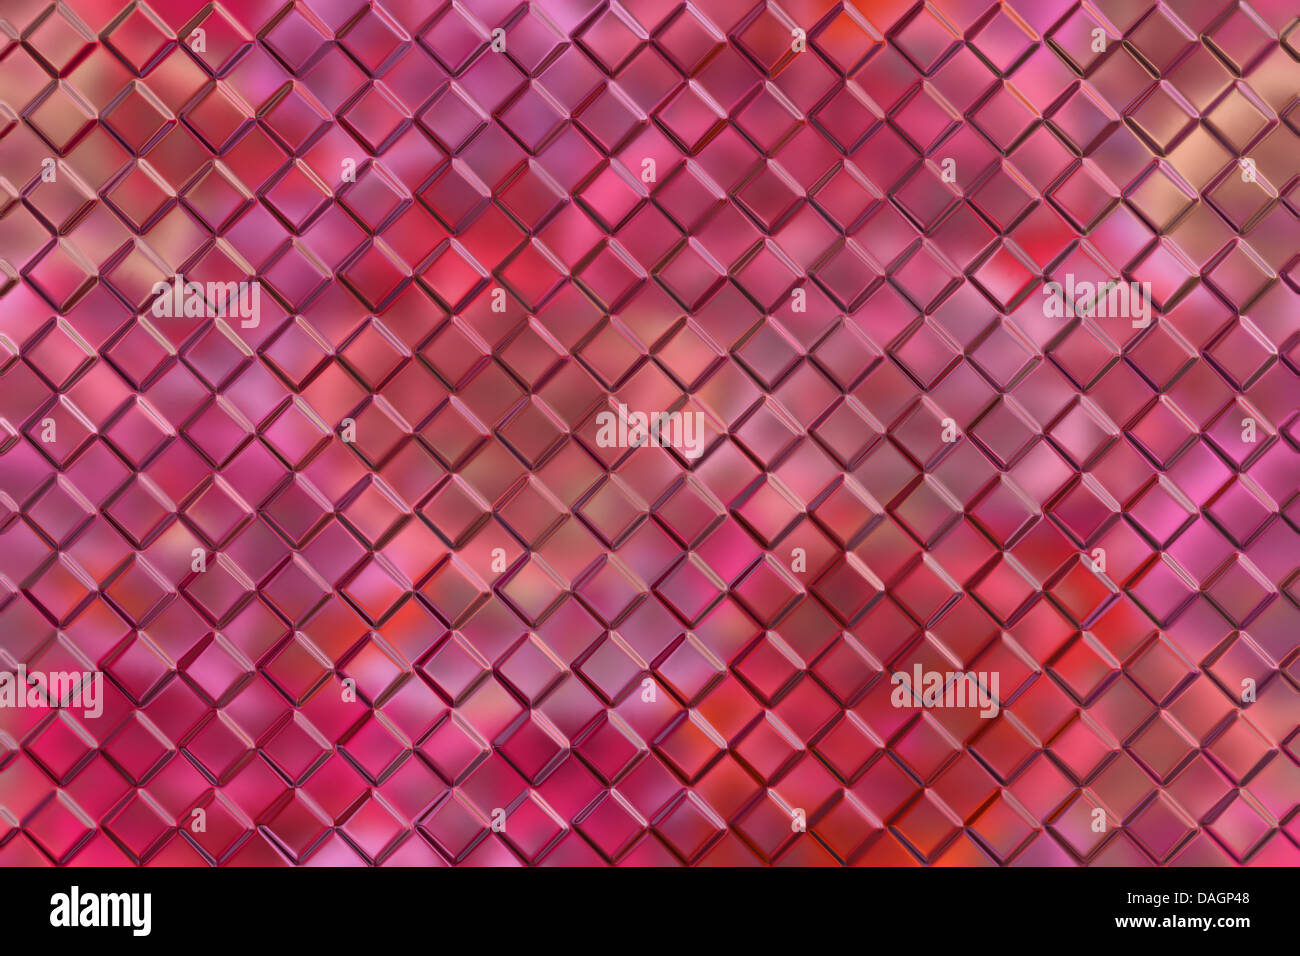 Computer graphic design sfondo astratto di rosa goffrare i blocchi quadrati Foto Stock